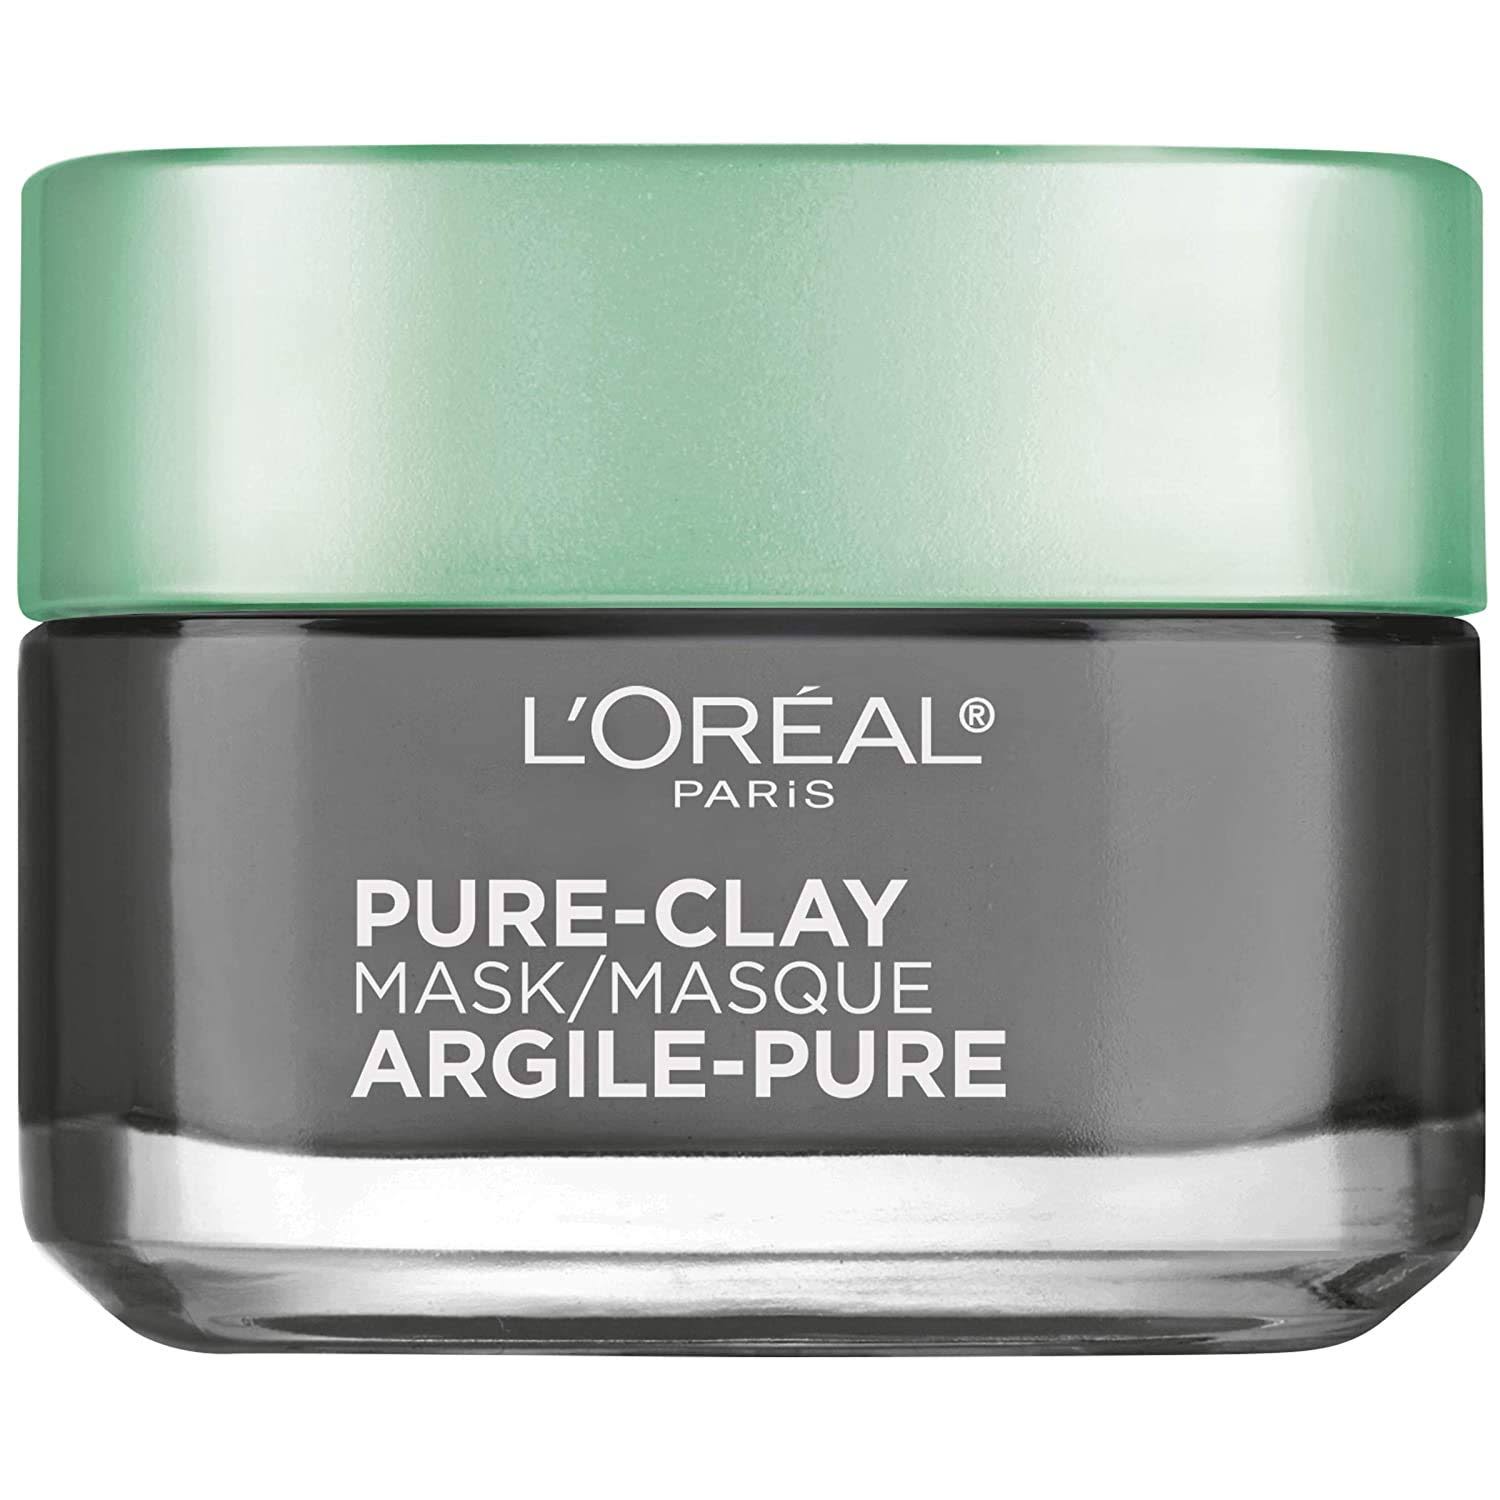 L'Oréal Detox and Brighten Pure Clay Mask - 1.7oz